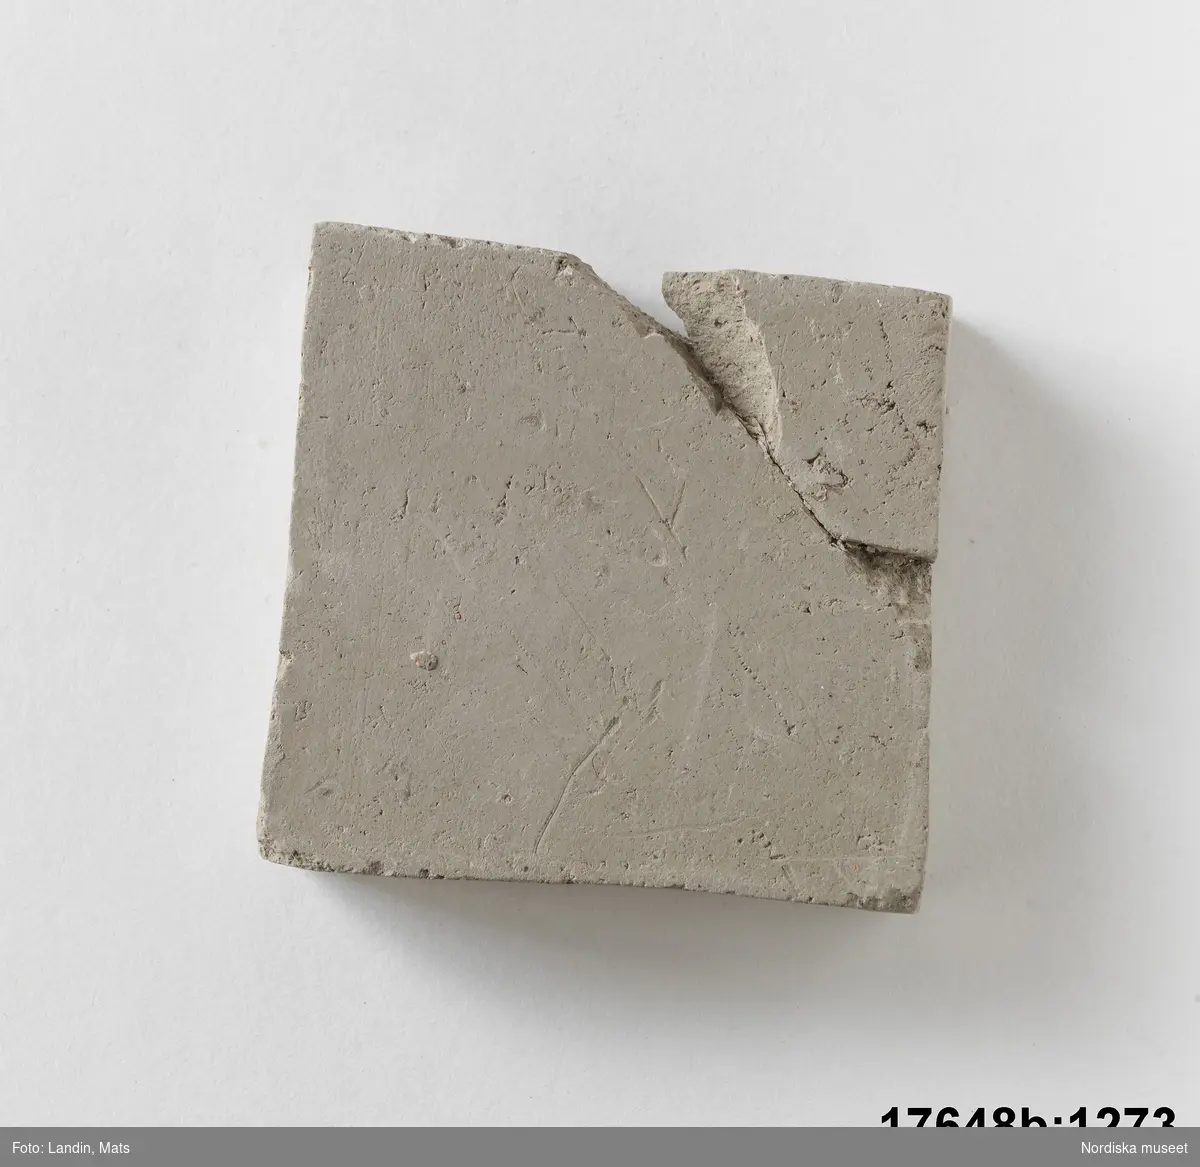 Rektangulär platta av bränd oglaserad grå lera. På en sida text: "Kakelugnsler".

Anm. ett hörn avslaget och påklistrat igen.
/Leif Wallin 2014-01-07